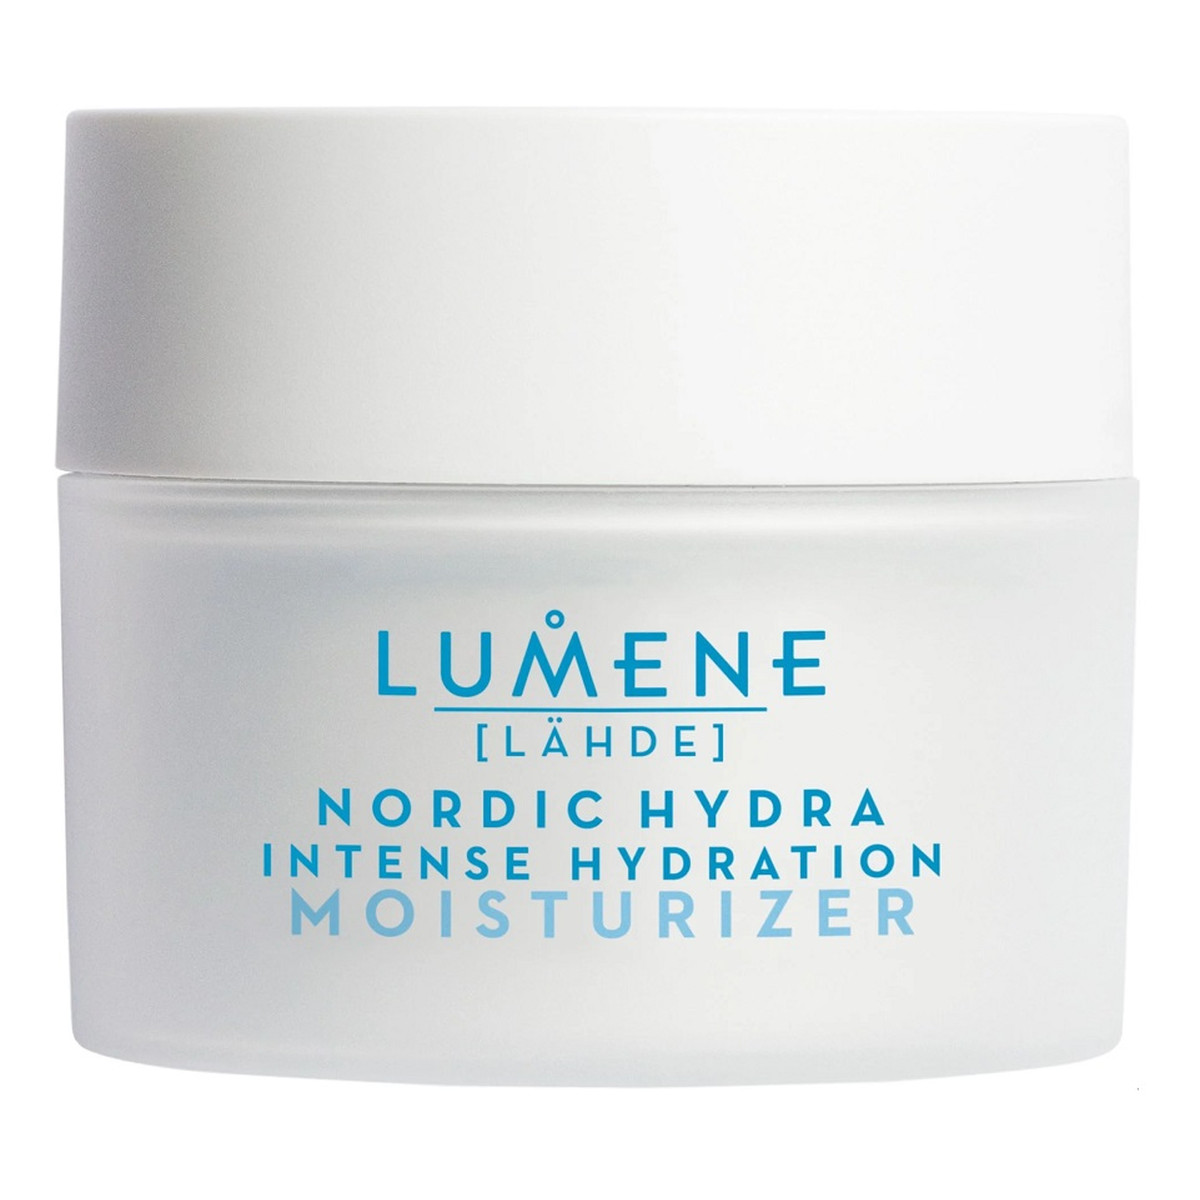 Lumene Nordic Hydra Intense Hydration Moisturizer intensywnie nawadniający Krem do twarzy 50ml